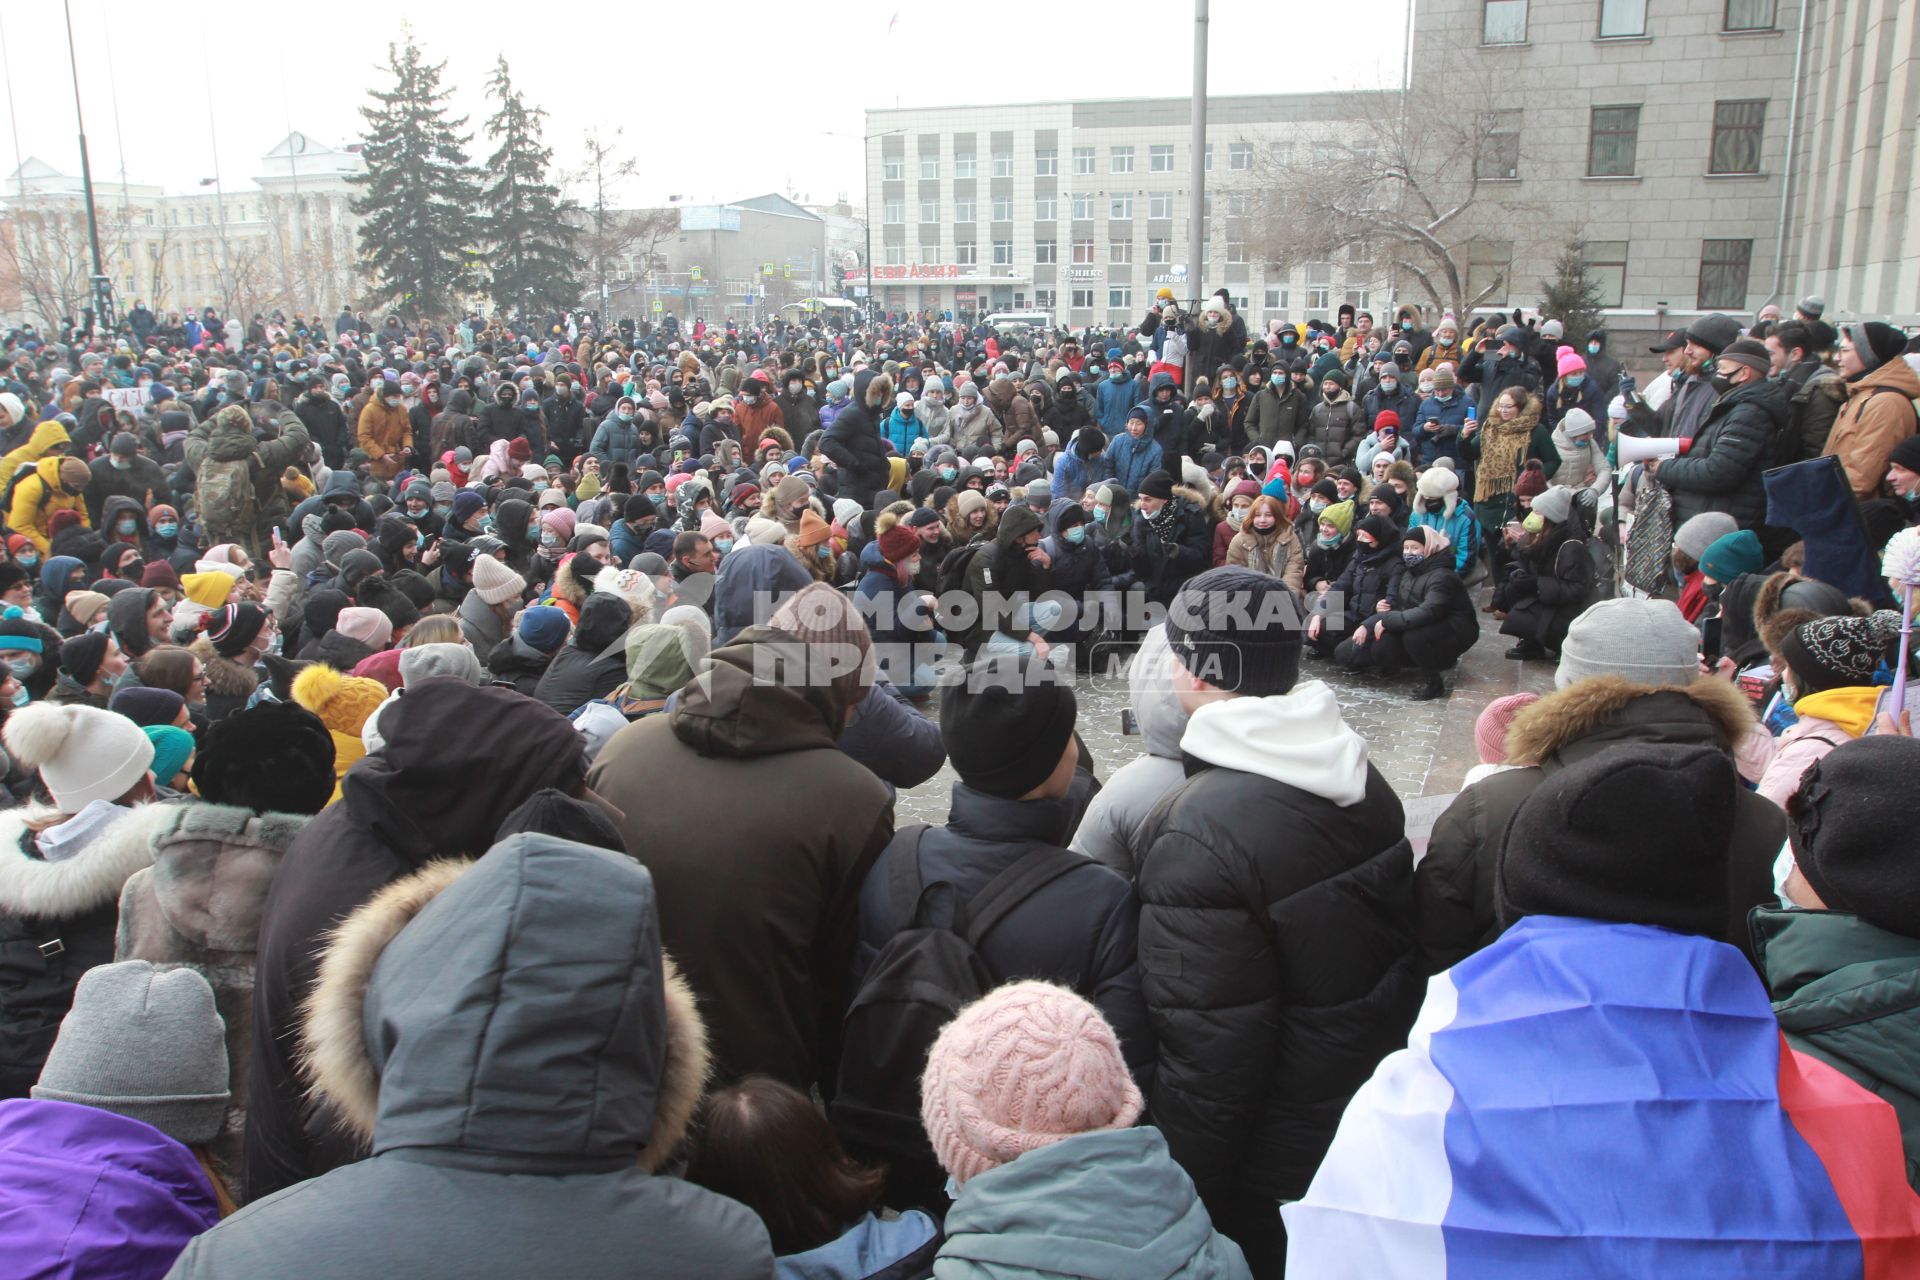 Иркутск. Участники несанкционированной акции в поддержку оппозиционера Алексея Навального у здания Иркутской областной администрации.